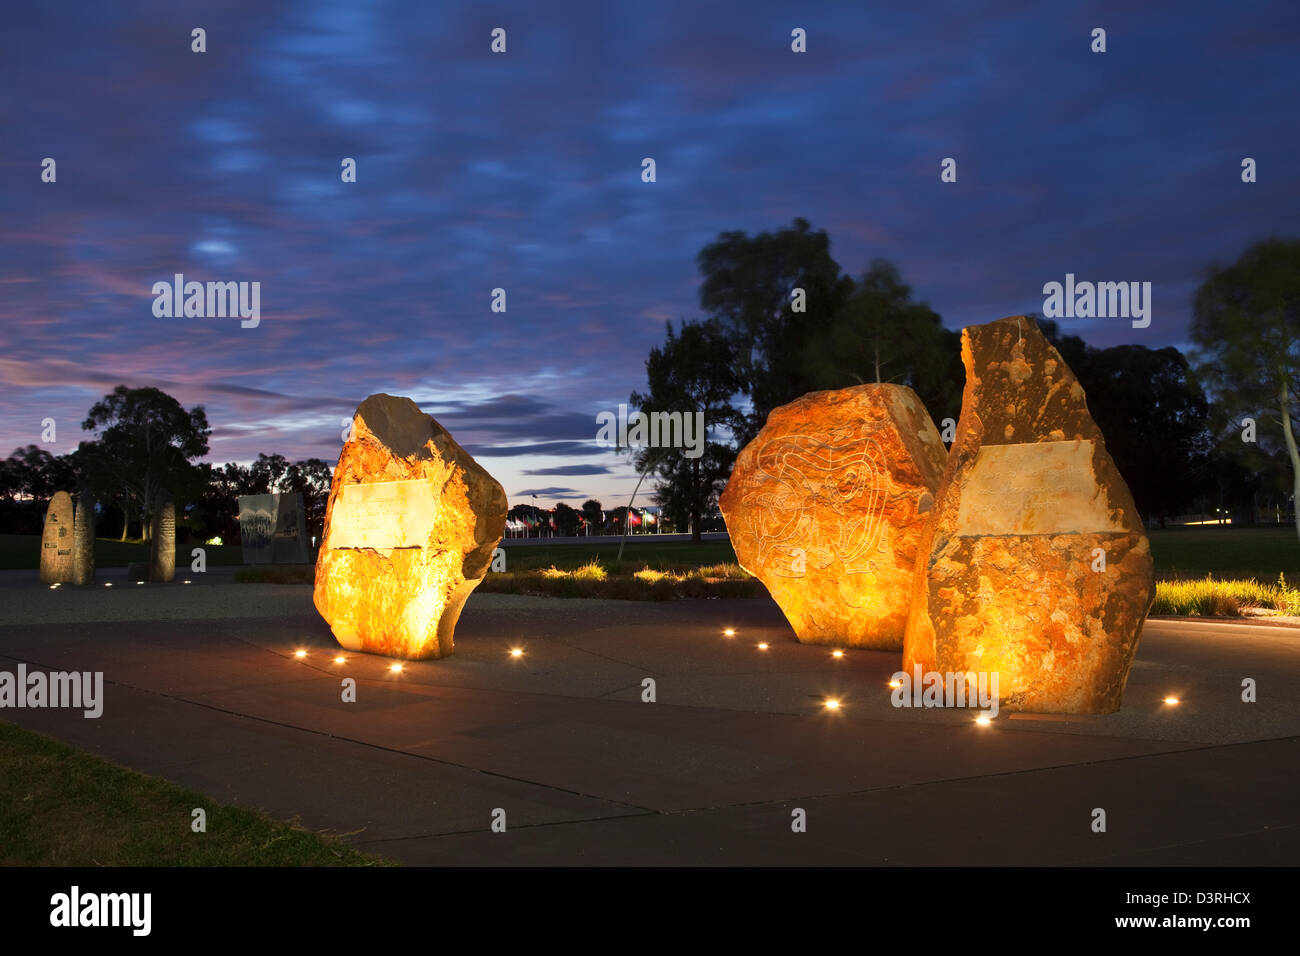 Au lieu d'art autochtones réconciliation illuminée au crépuscule. Canberra, Territoire de la capitale australienne (ACT), l'Australie Banque D'Images